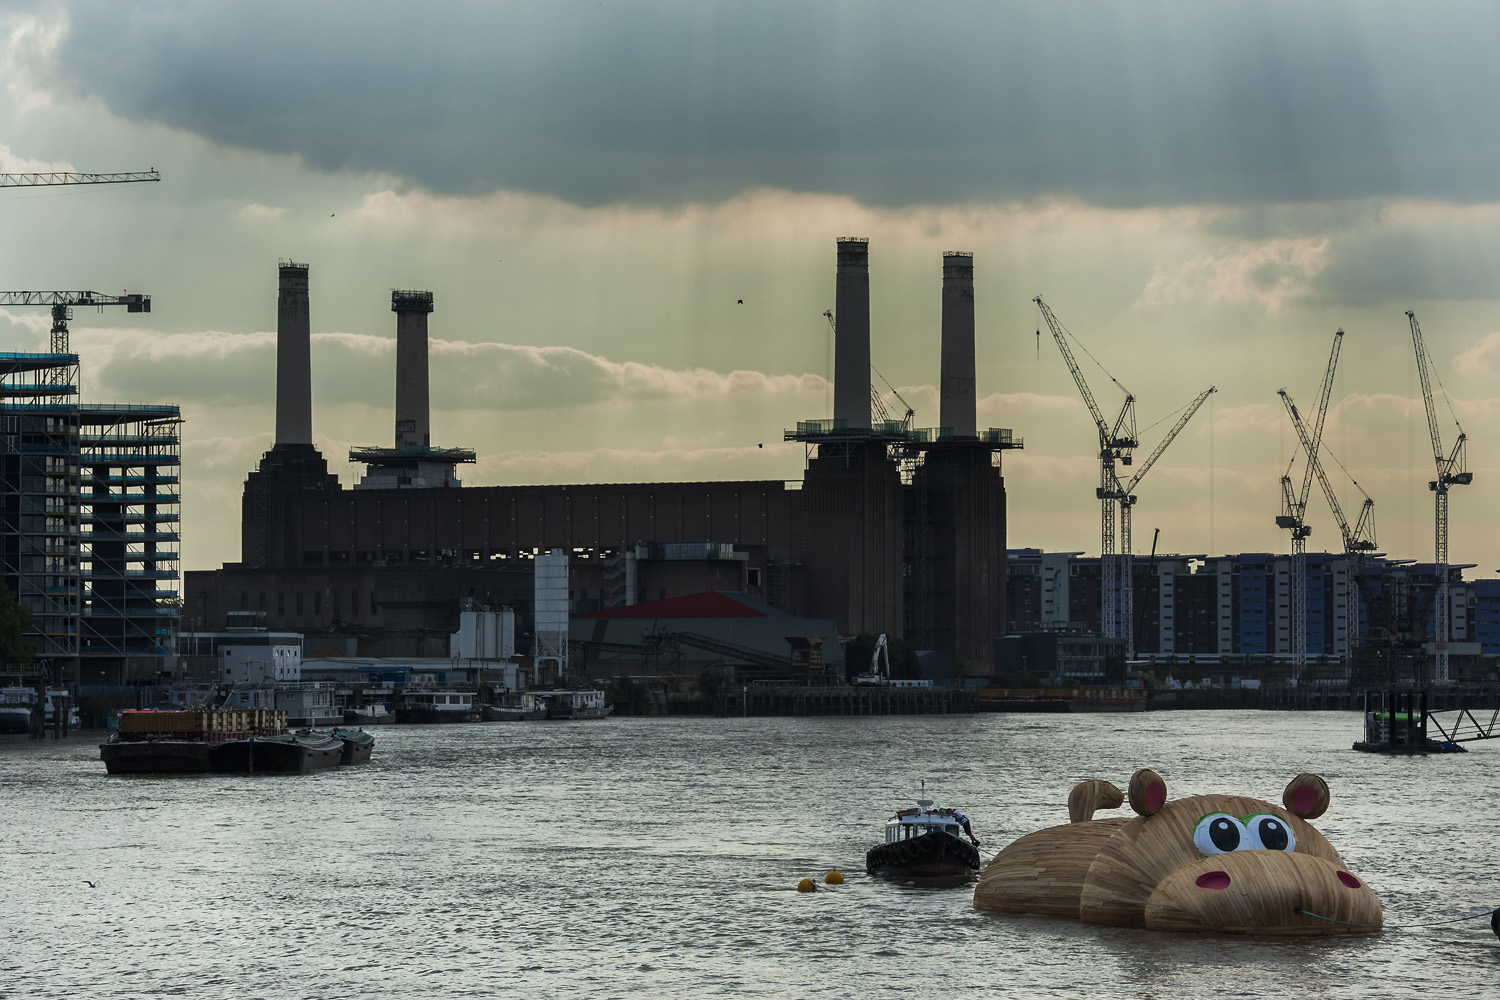 HippopoThames sculpture by Florentijn Hofman on the River Thames, London, Britain - 2 Sep 2014